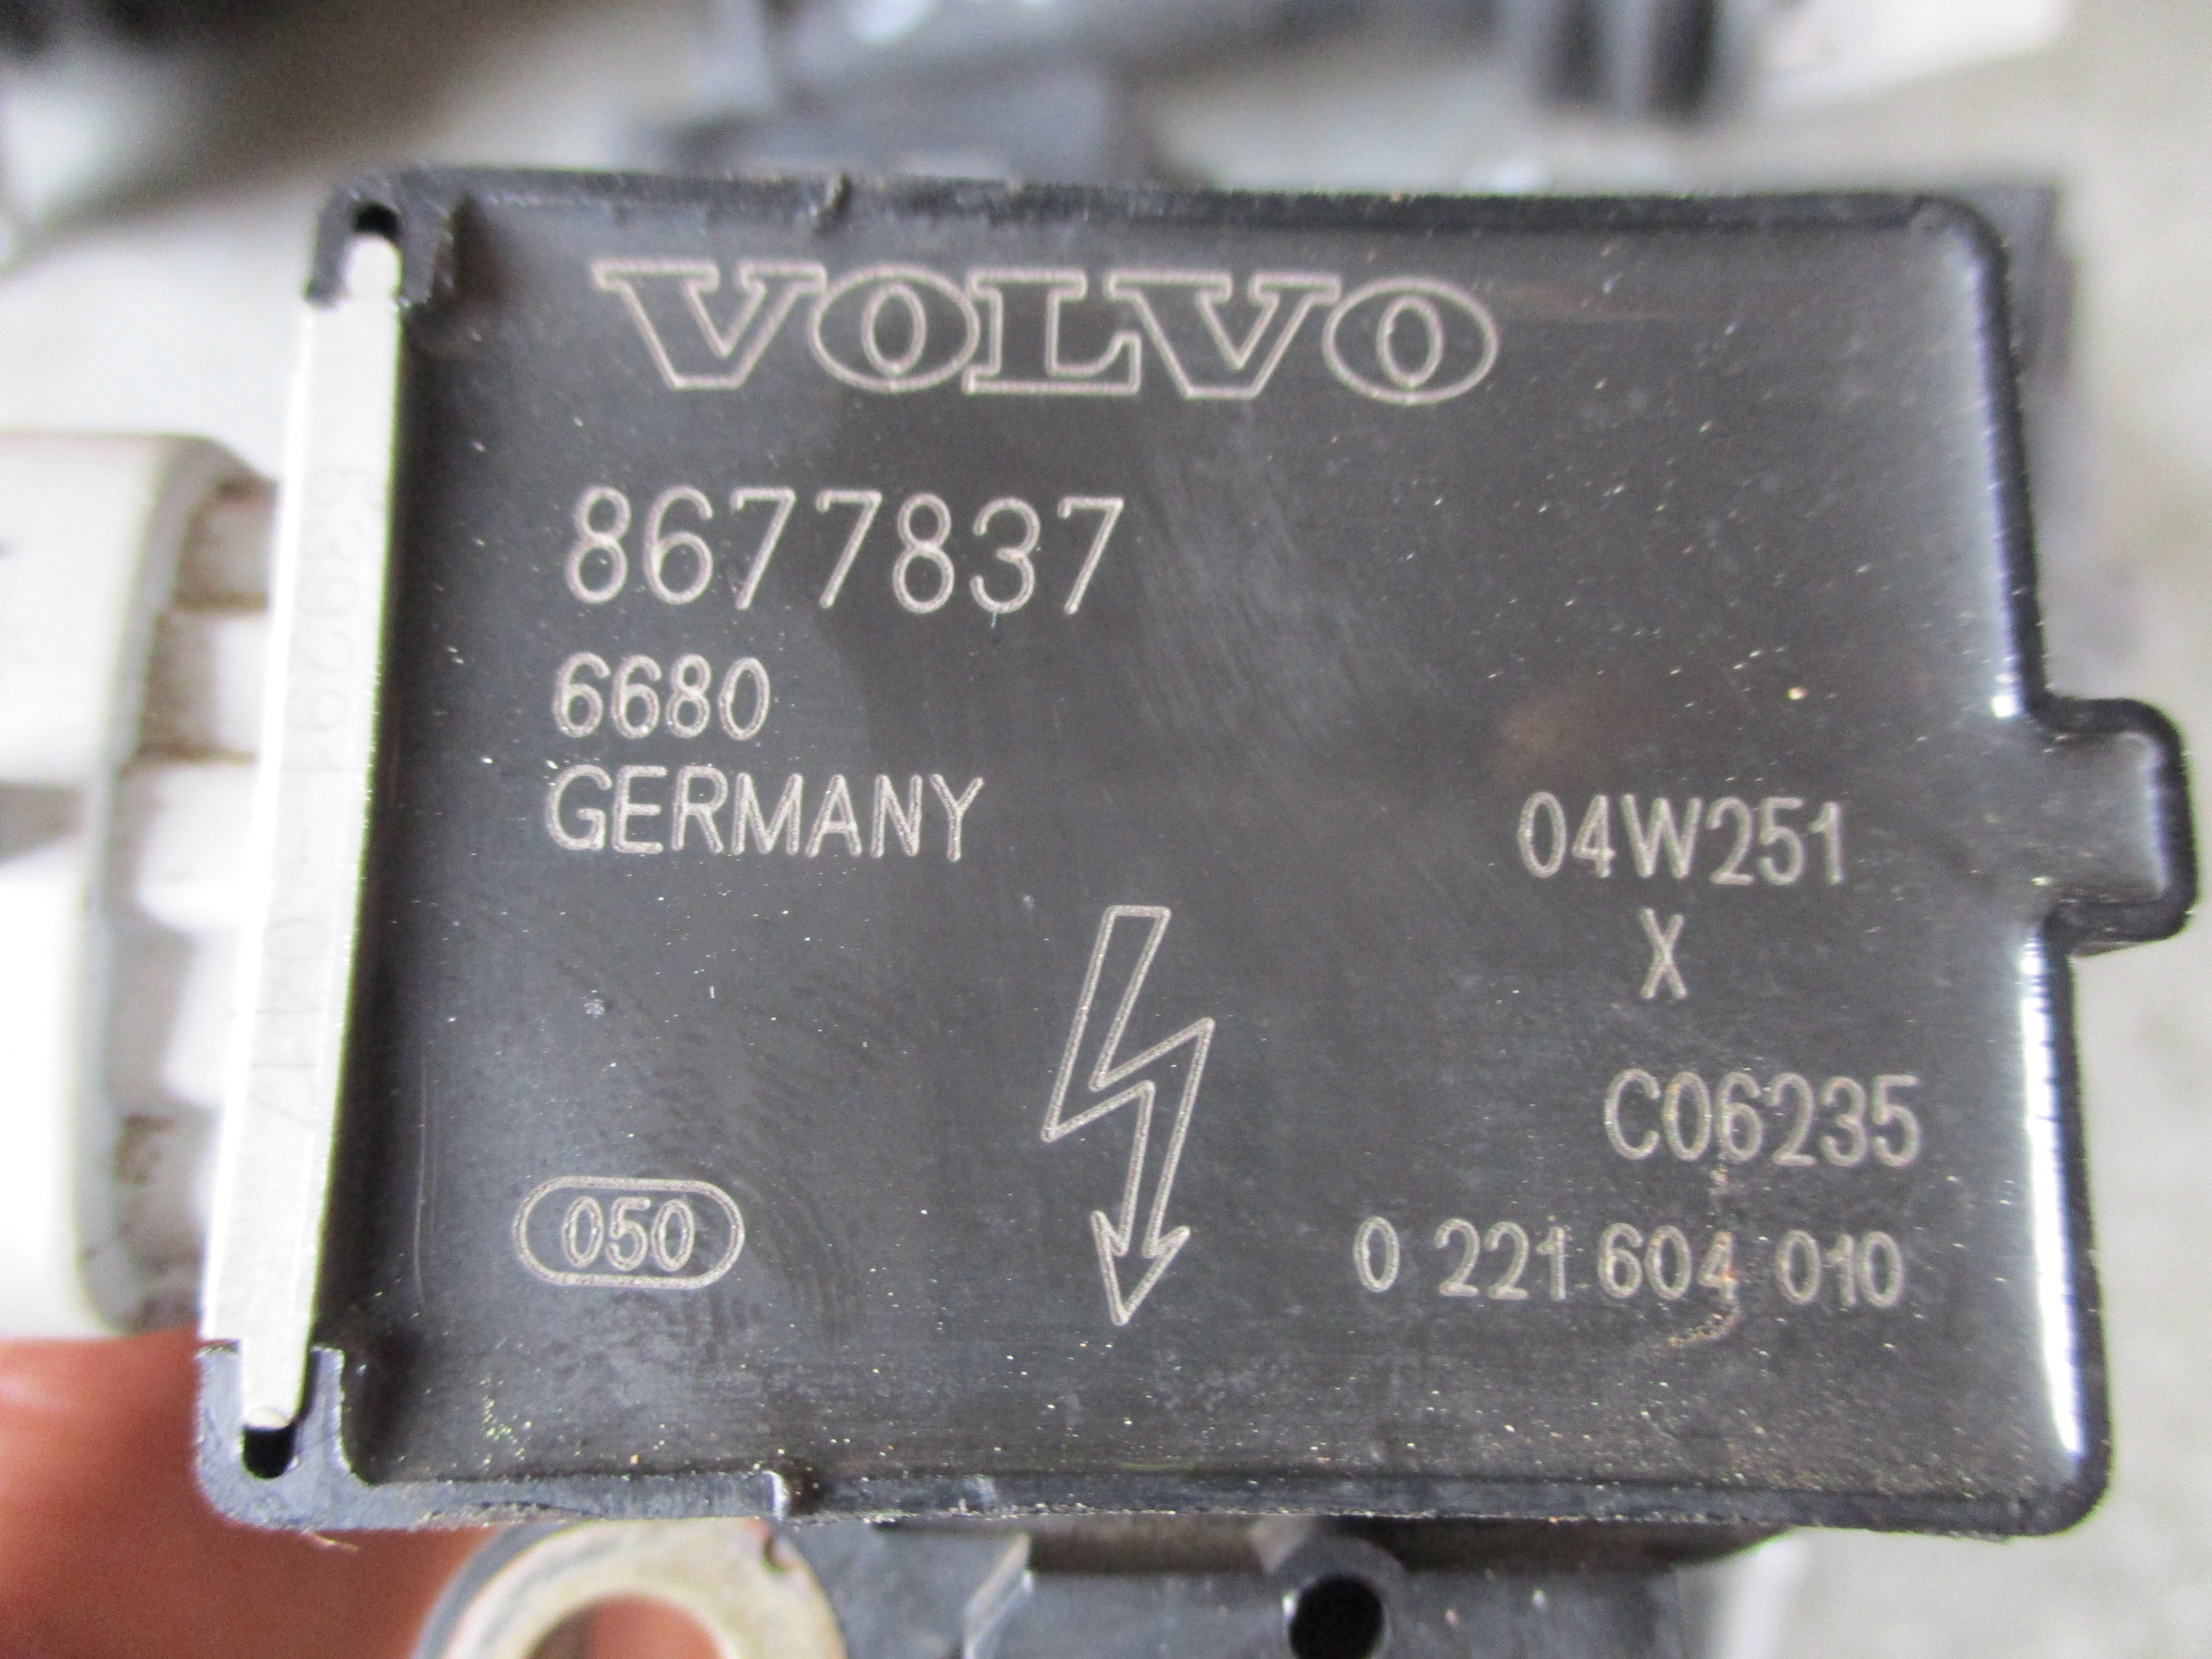 Πολλαπλασιαστές ( 8677837 , 0221604010 ) Volvo S40 ’04 Προσφορά.